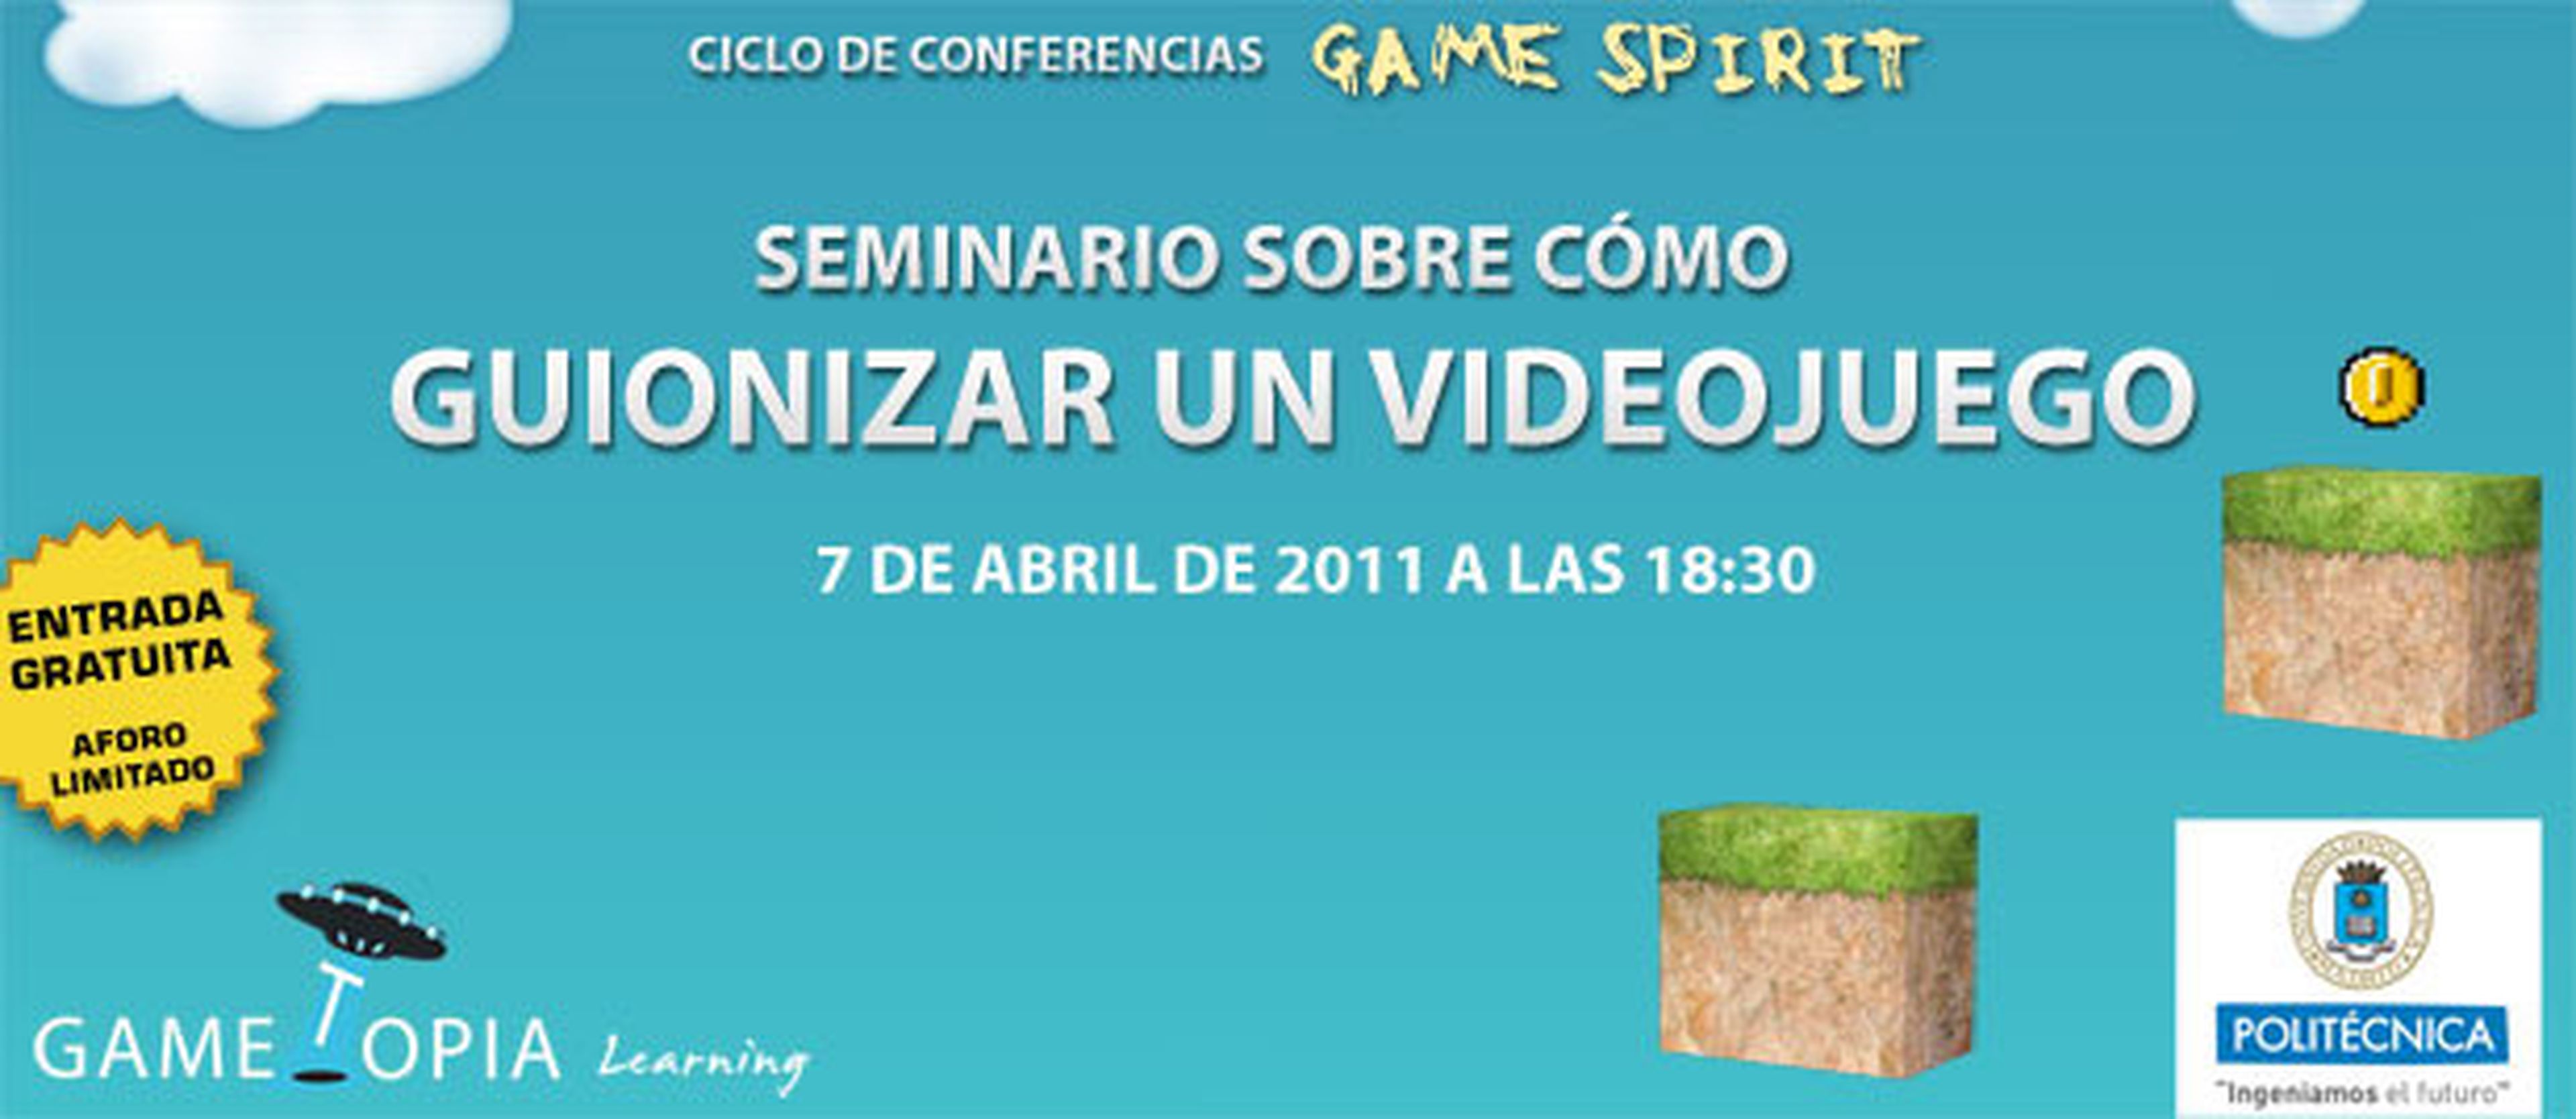 Gametopia te invita a su seminario